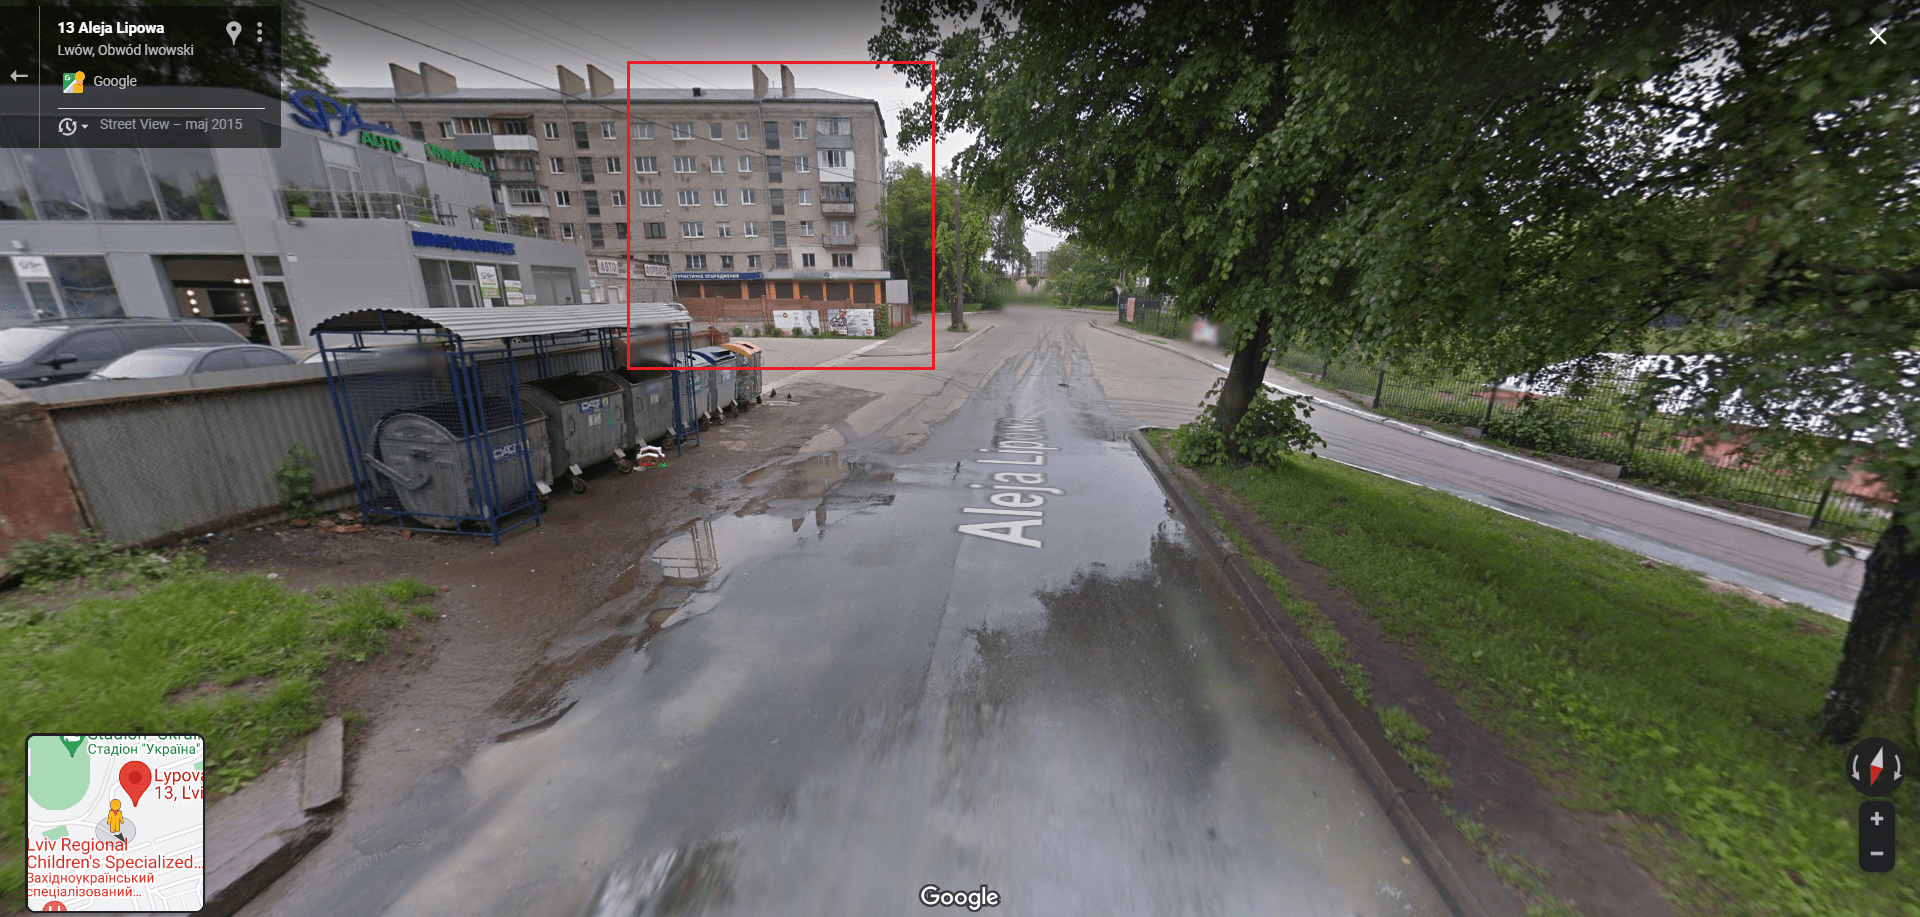 Zrzut ekranu widoku Google Street View z tym samym budynkiem z 2015 roku.